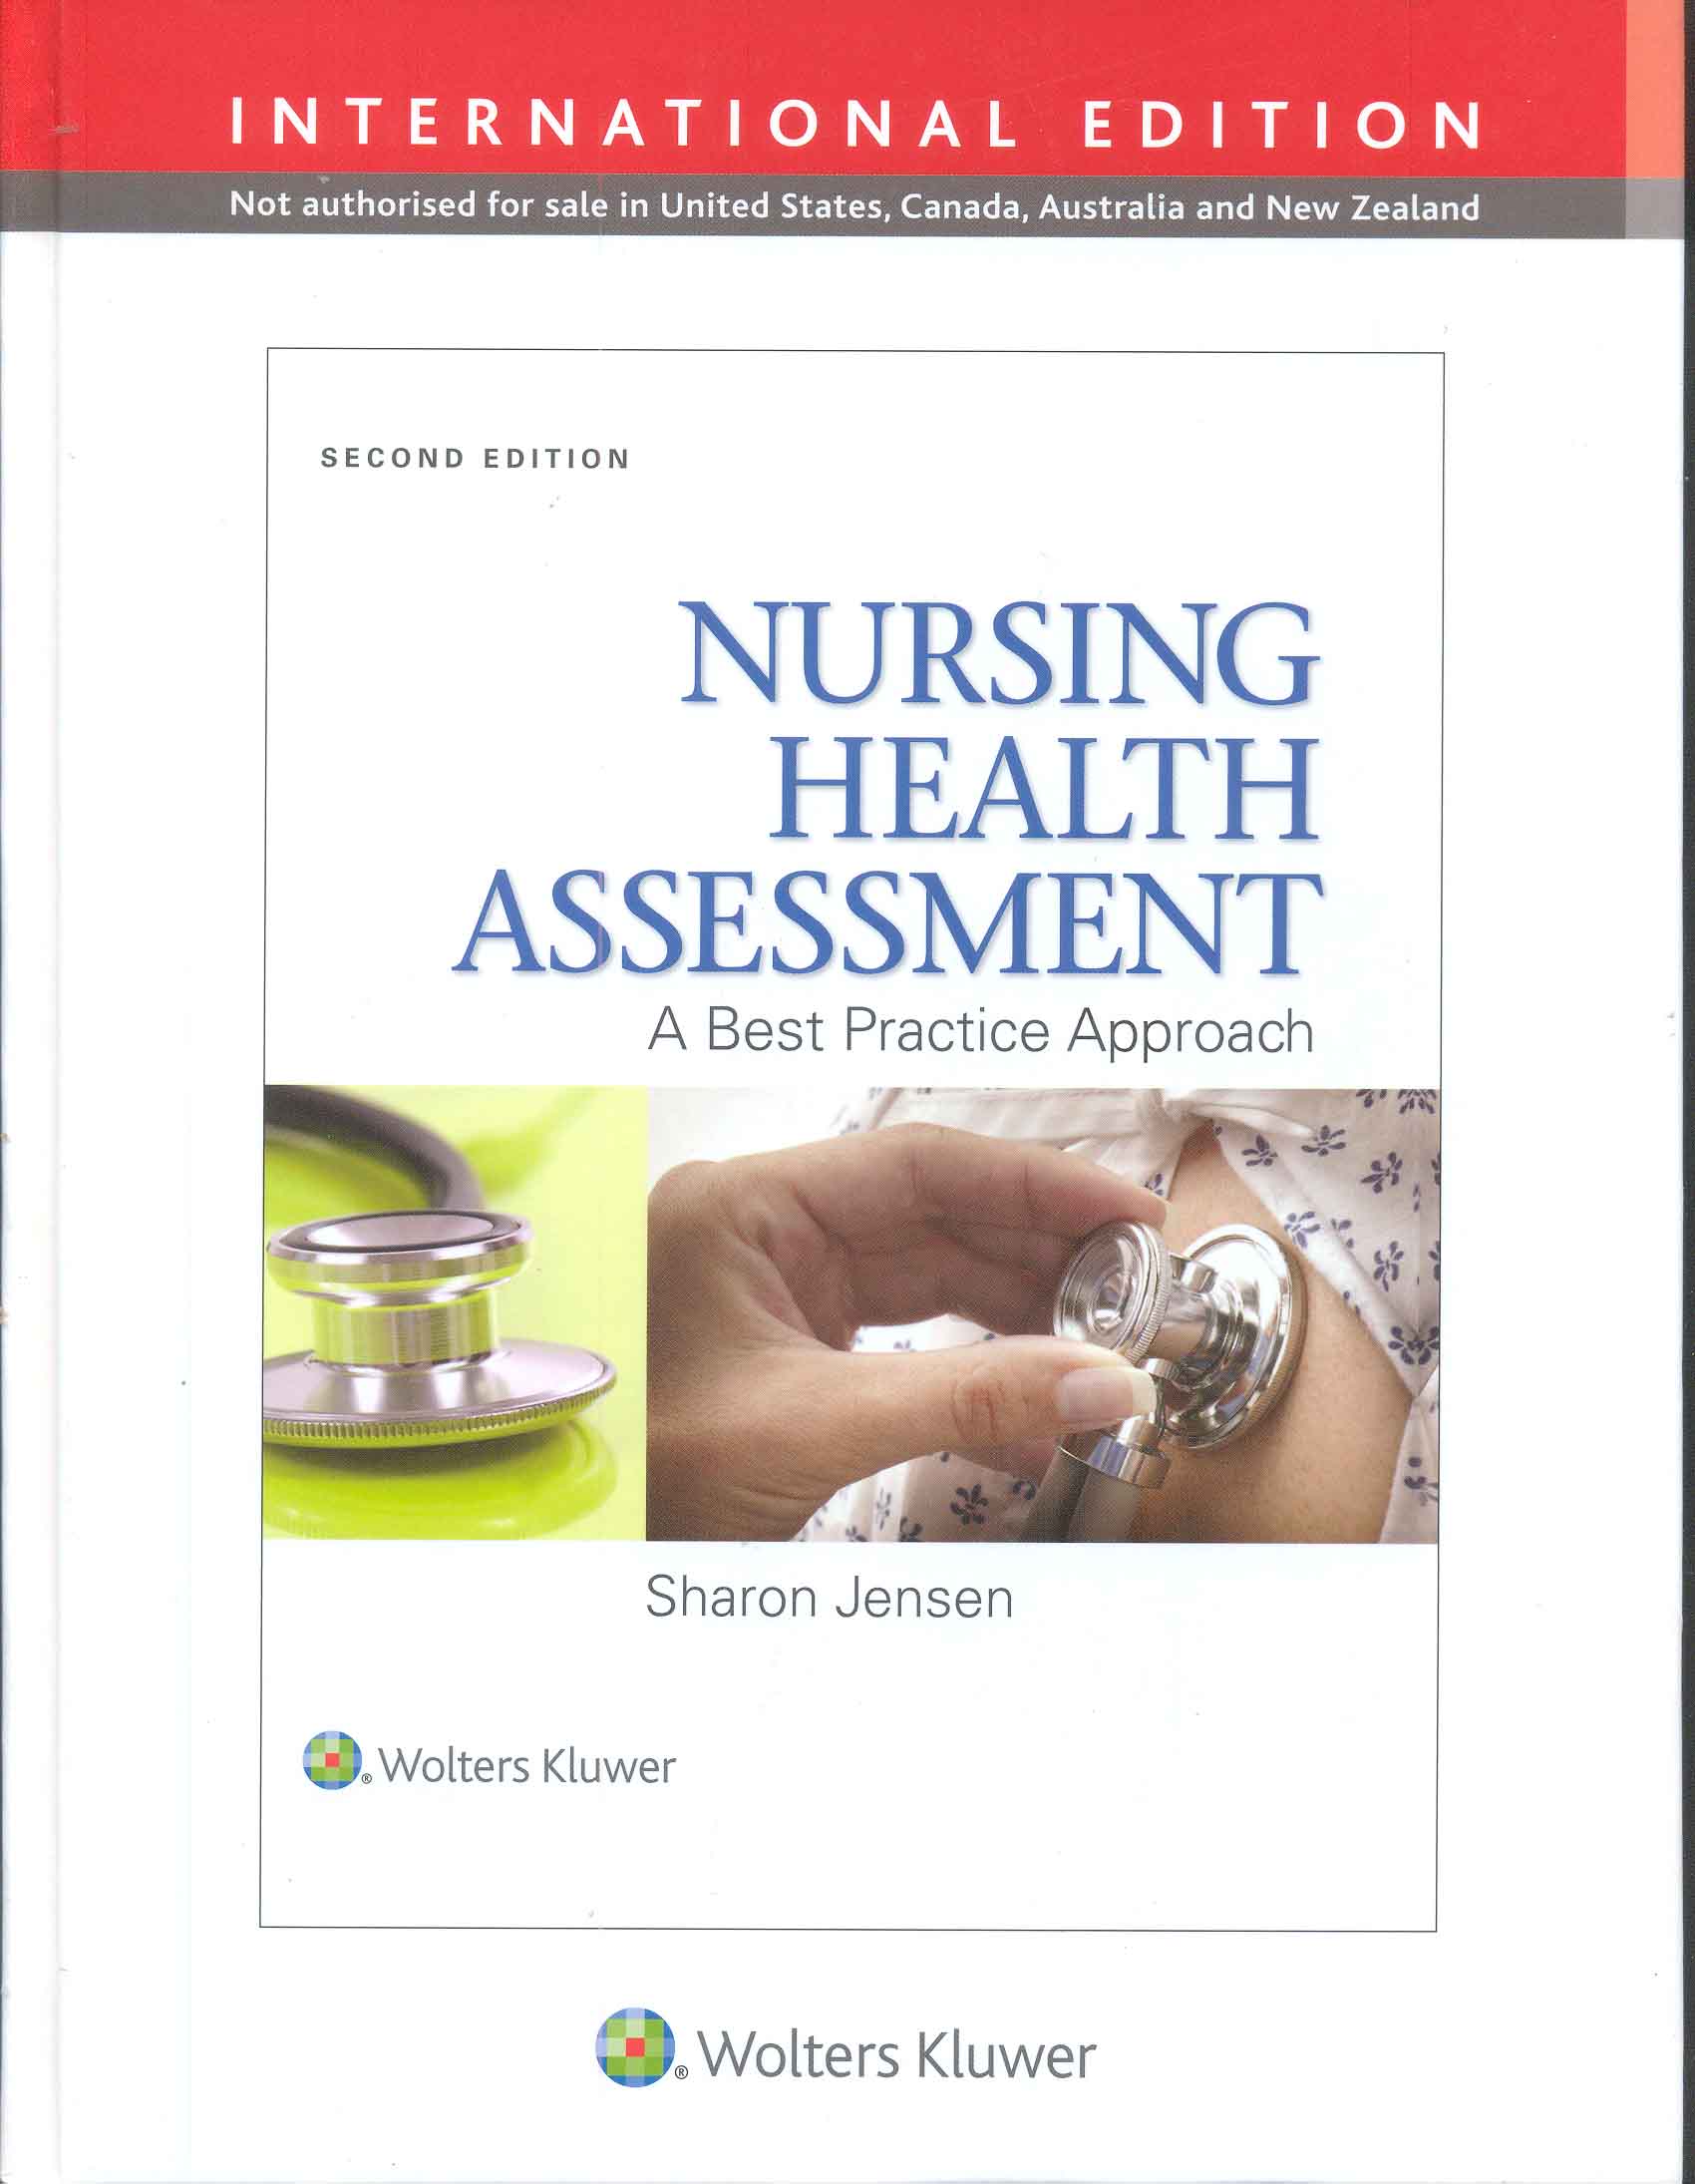 Nursing health assessment : a best practice approach